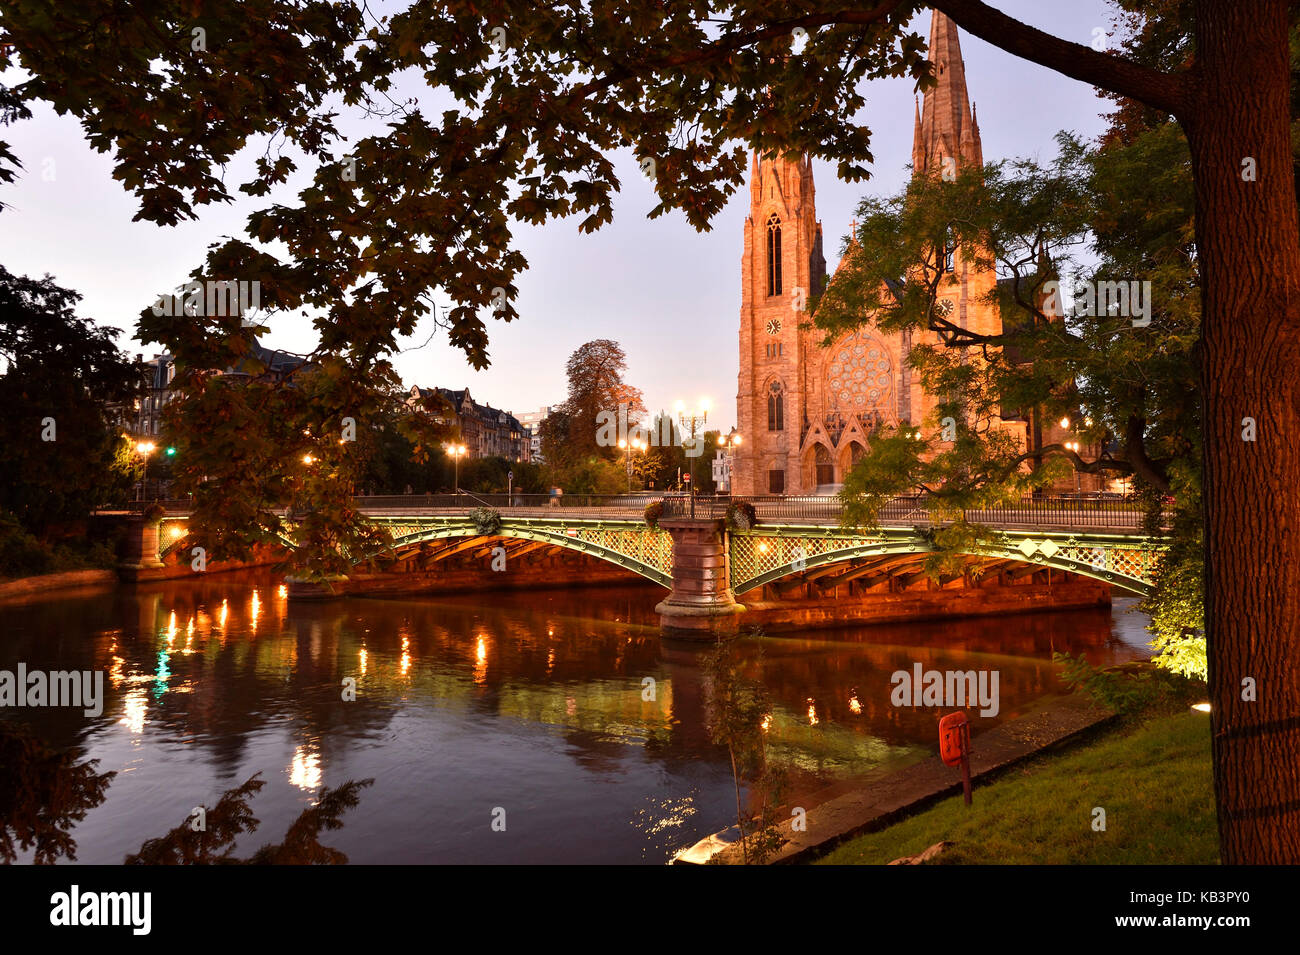 Francia, Bas Rhin, Estrasburgo, casco antiguo catalogado como patrimonio mundial por la UNESCO, la iglesia de San Pablo y auvergne puente que cruza el río Ill Foto de stock